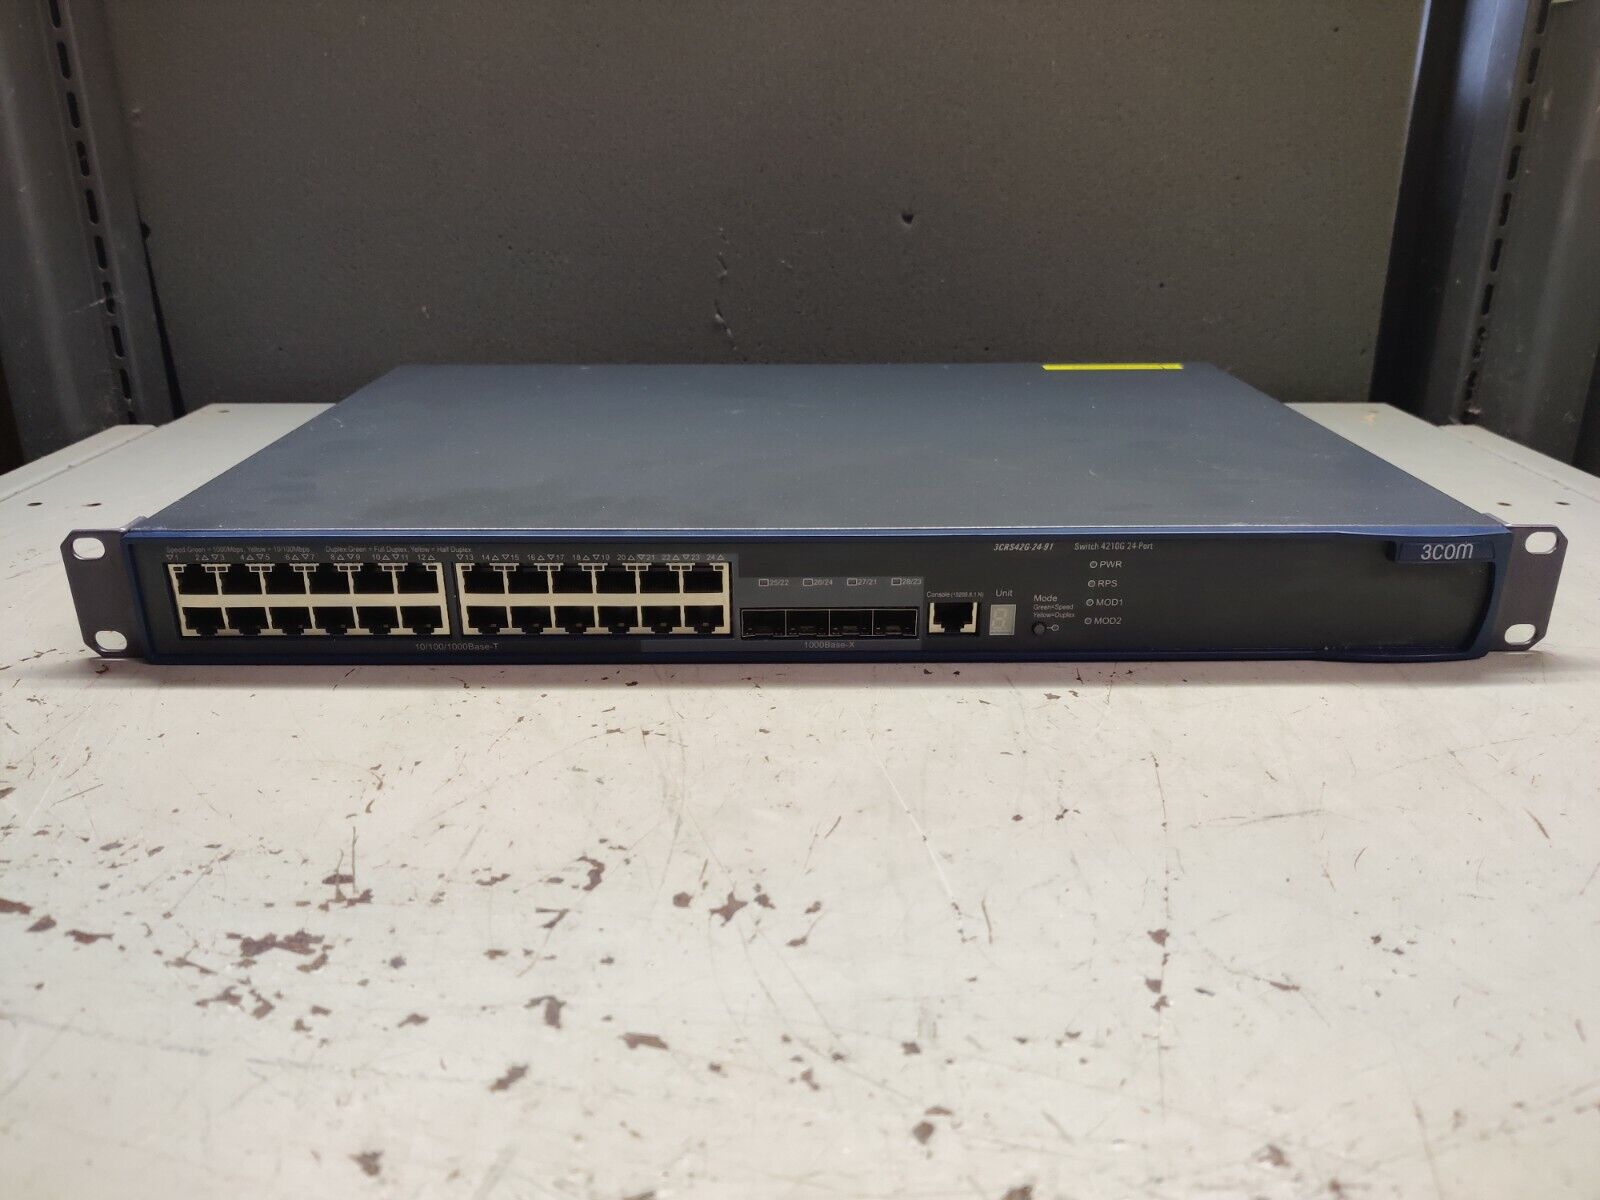 3COM 4210G 3CRS42G-24-91 24-Port Gigabit Ethernet Network Switch - Tested